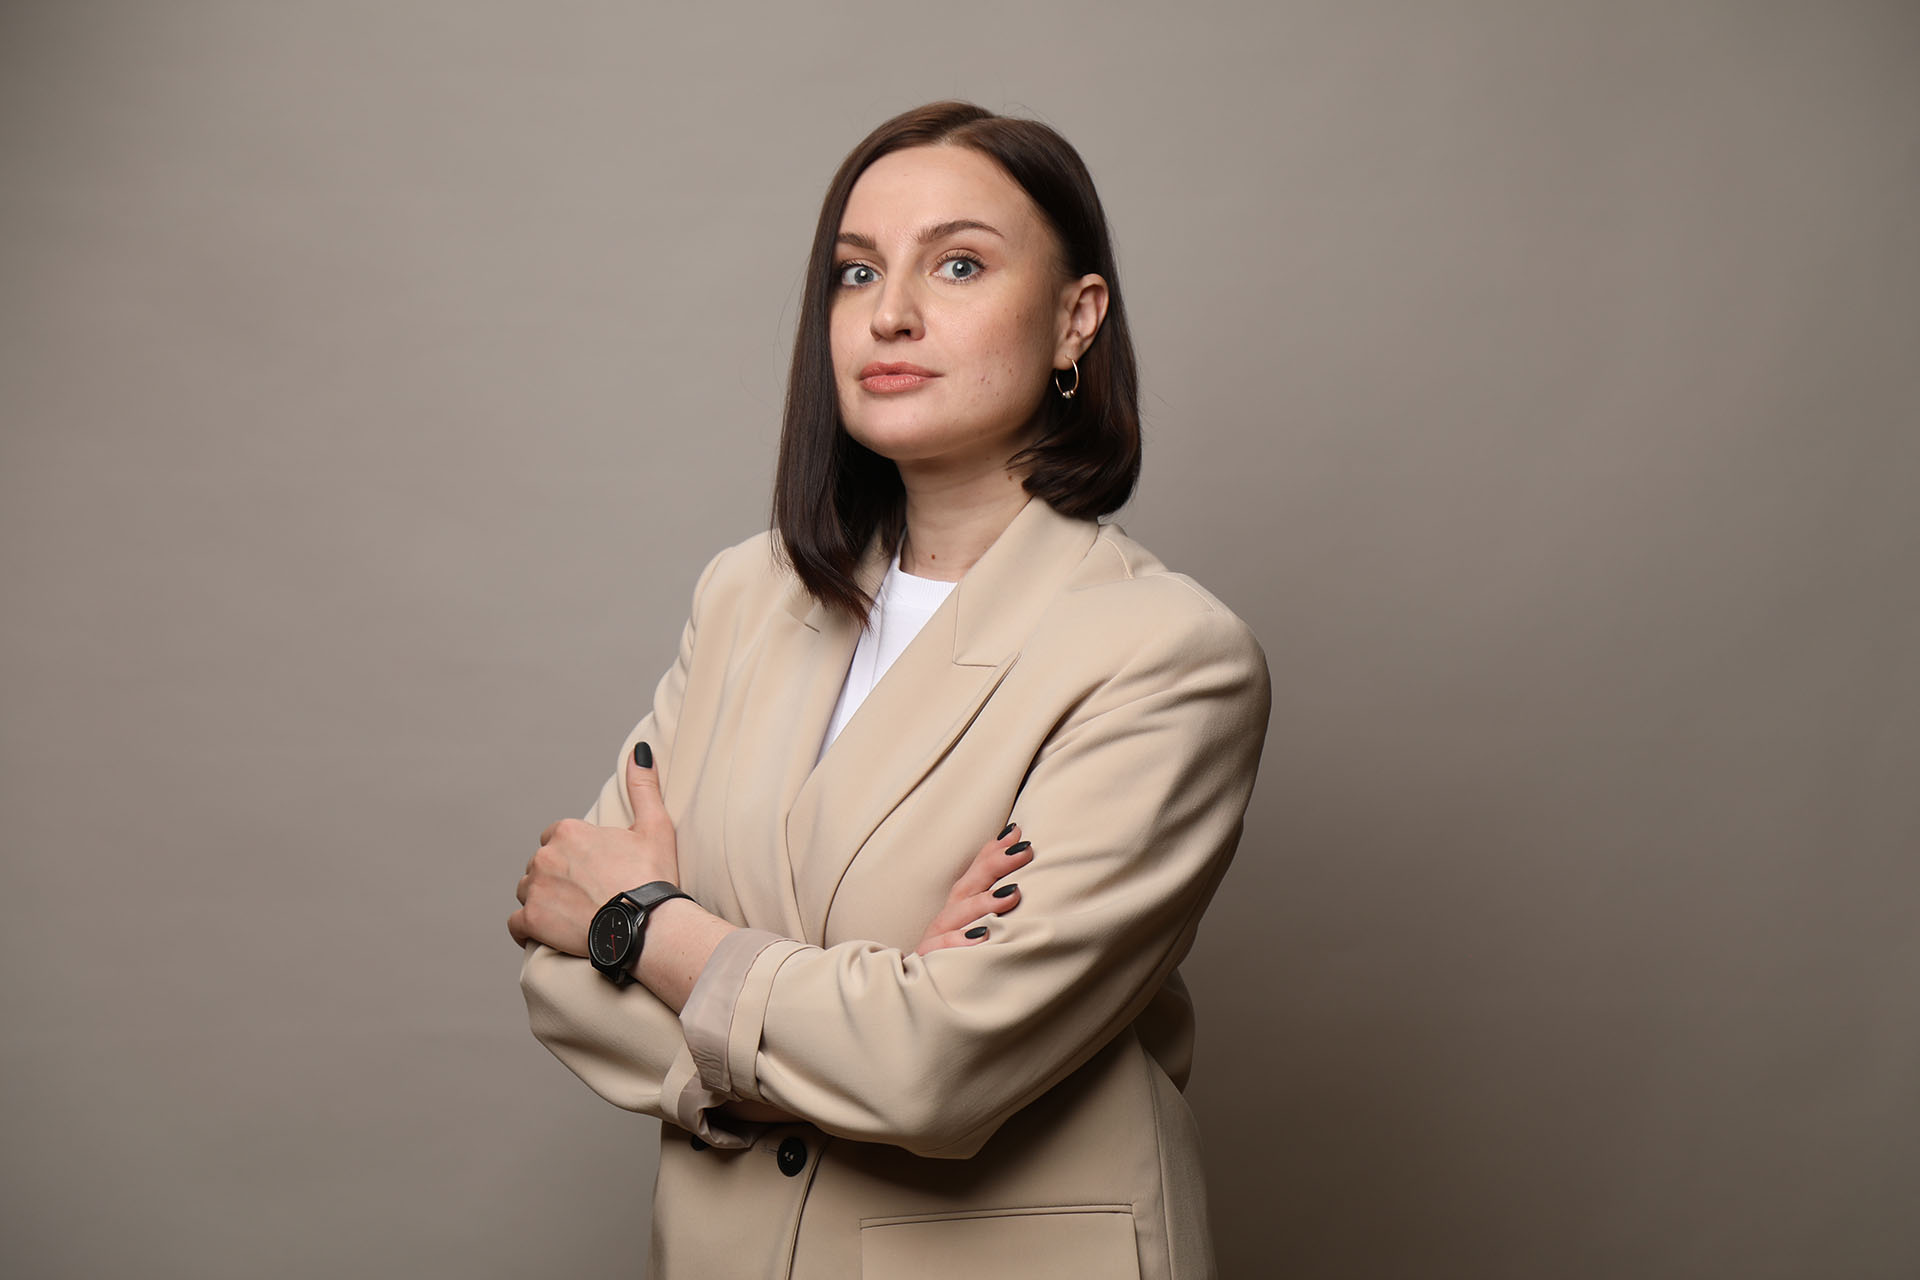 Кристина Самсонова - основатель и CEO Агентства систематизации, эксперт по созданию систем управления, продаж и HR в бизнесе